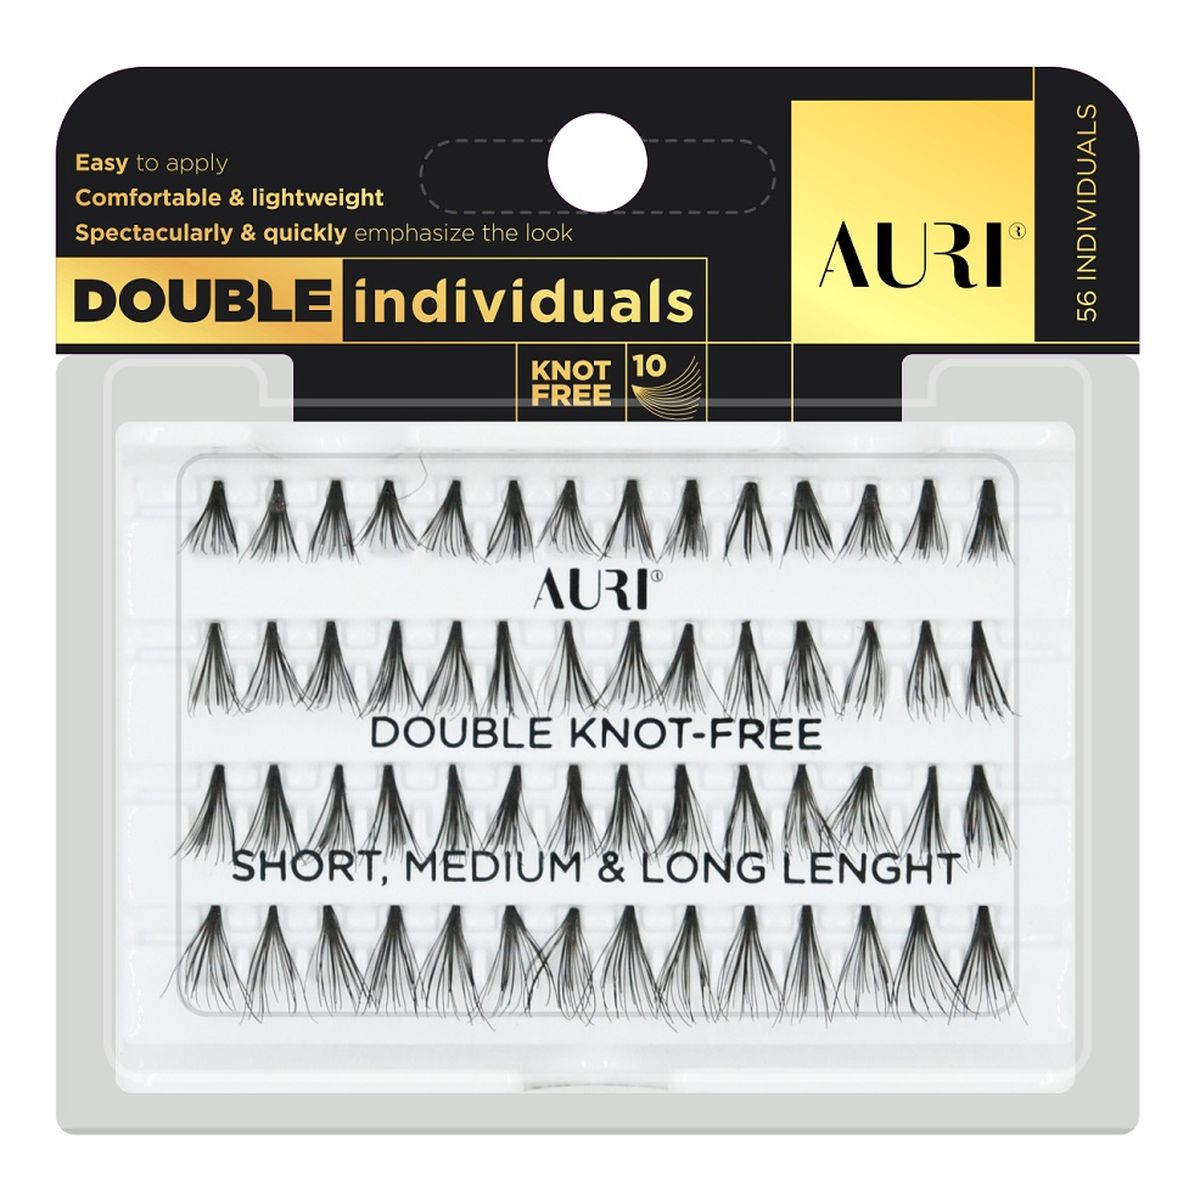 Auri Double individuals kępki rzęs bez węzełków mix 56szt.